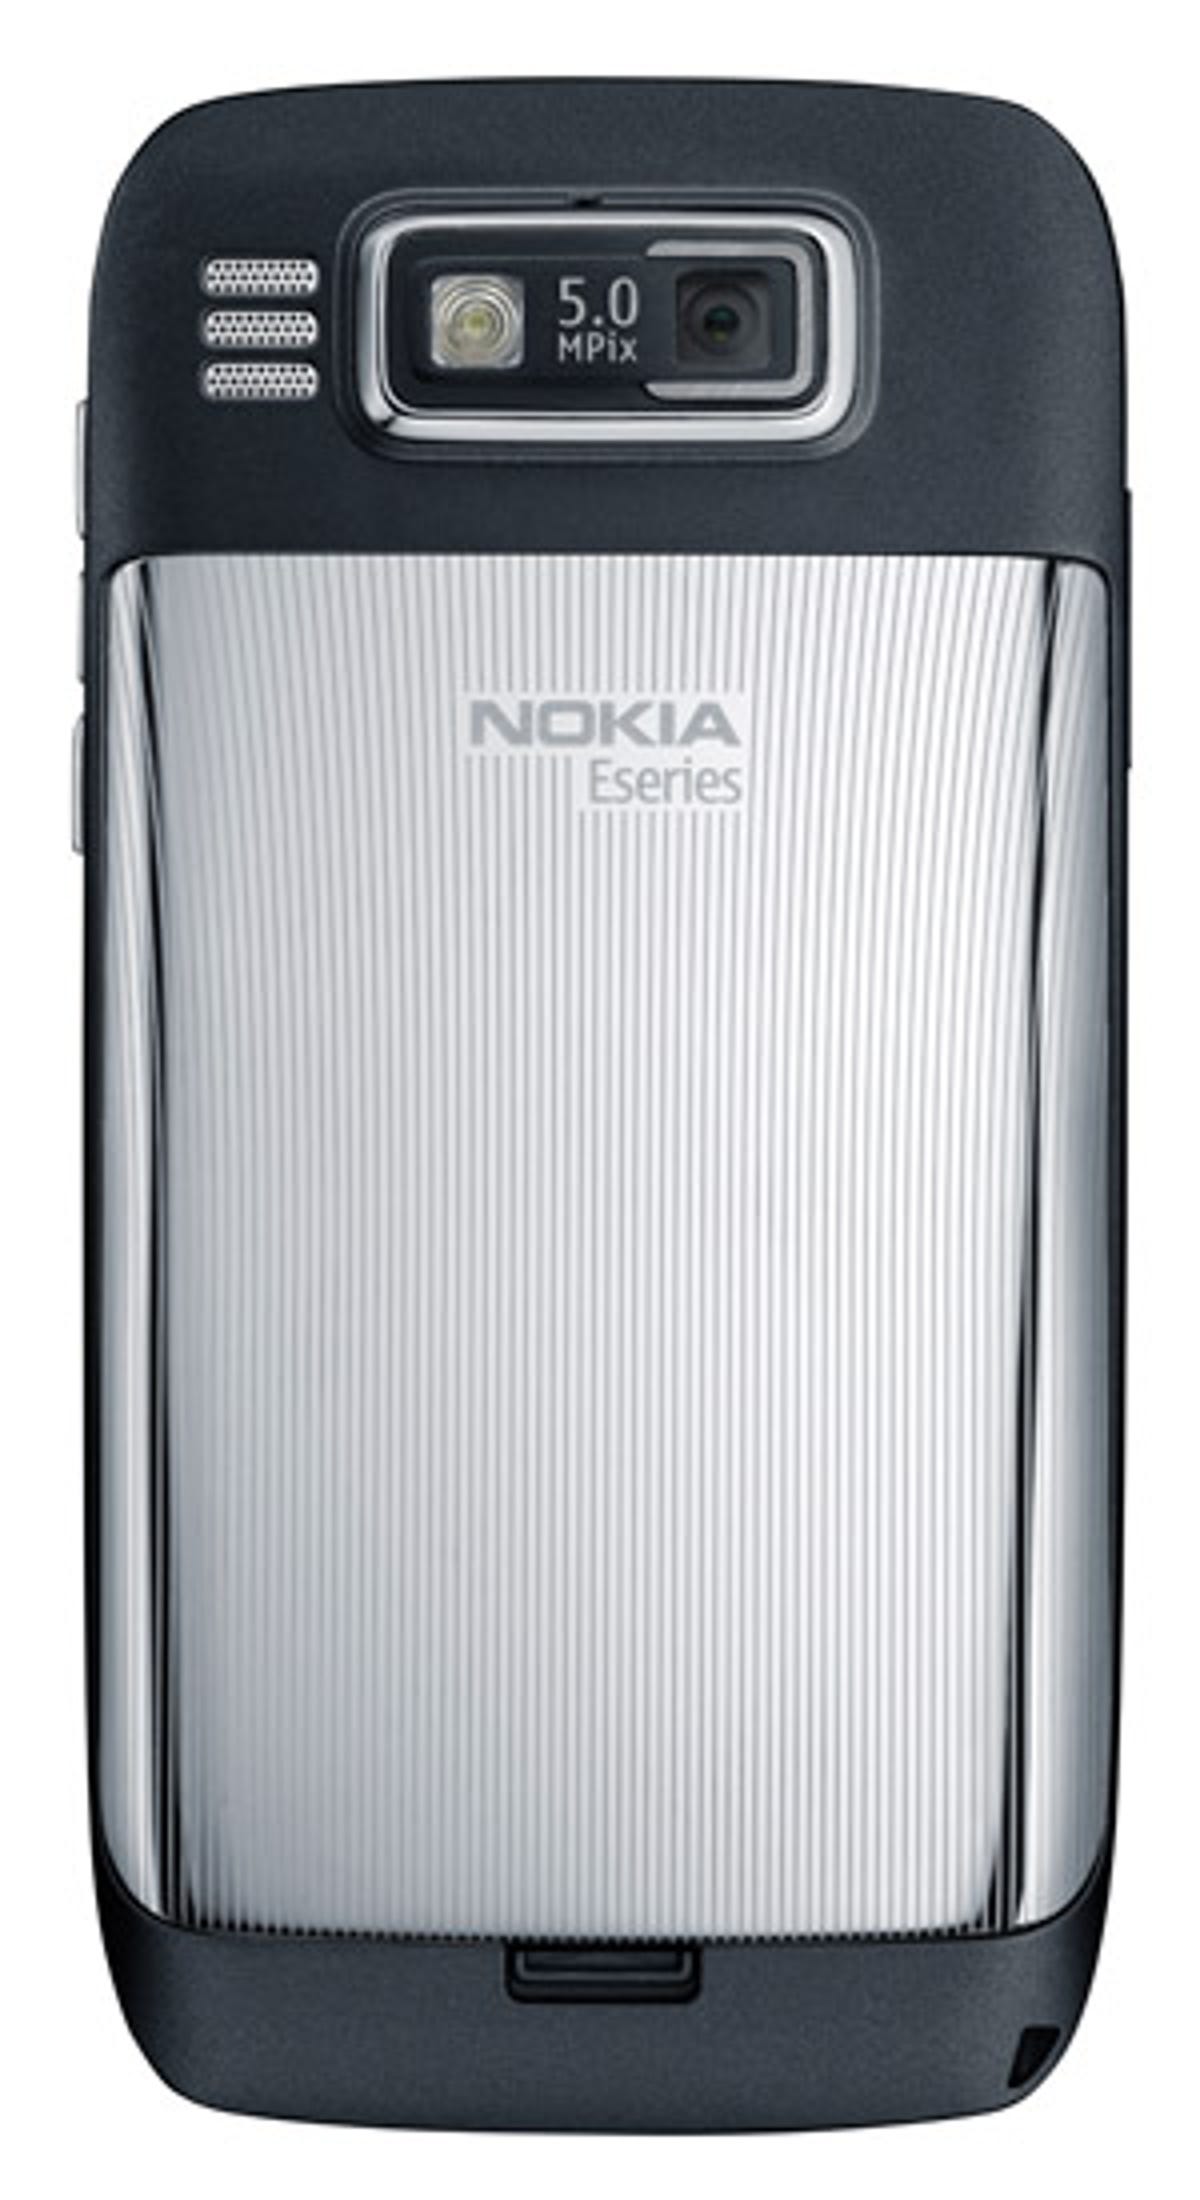 Nokia E72 (rear)